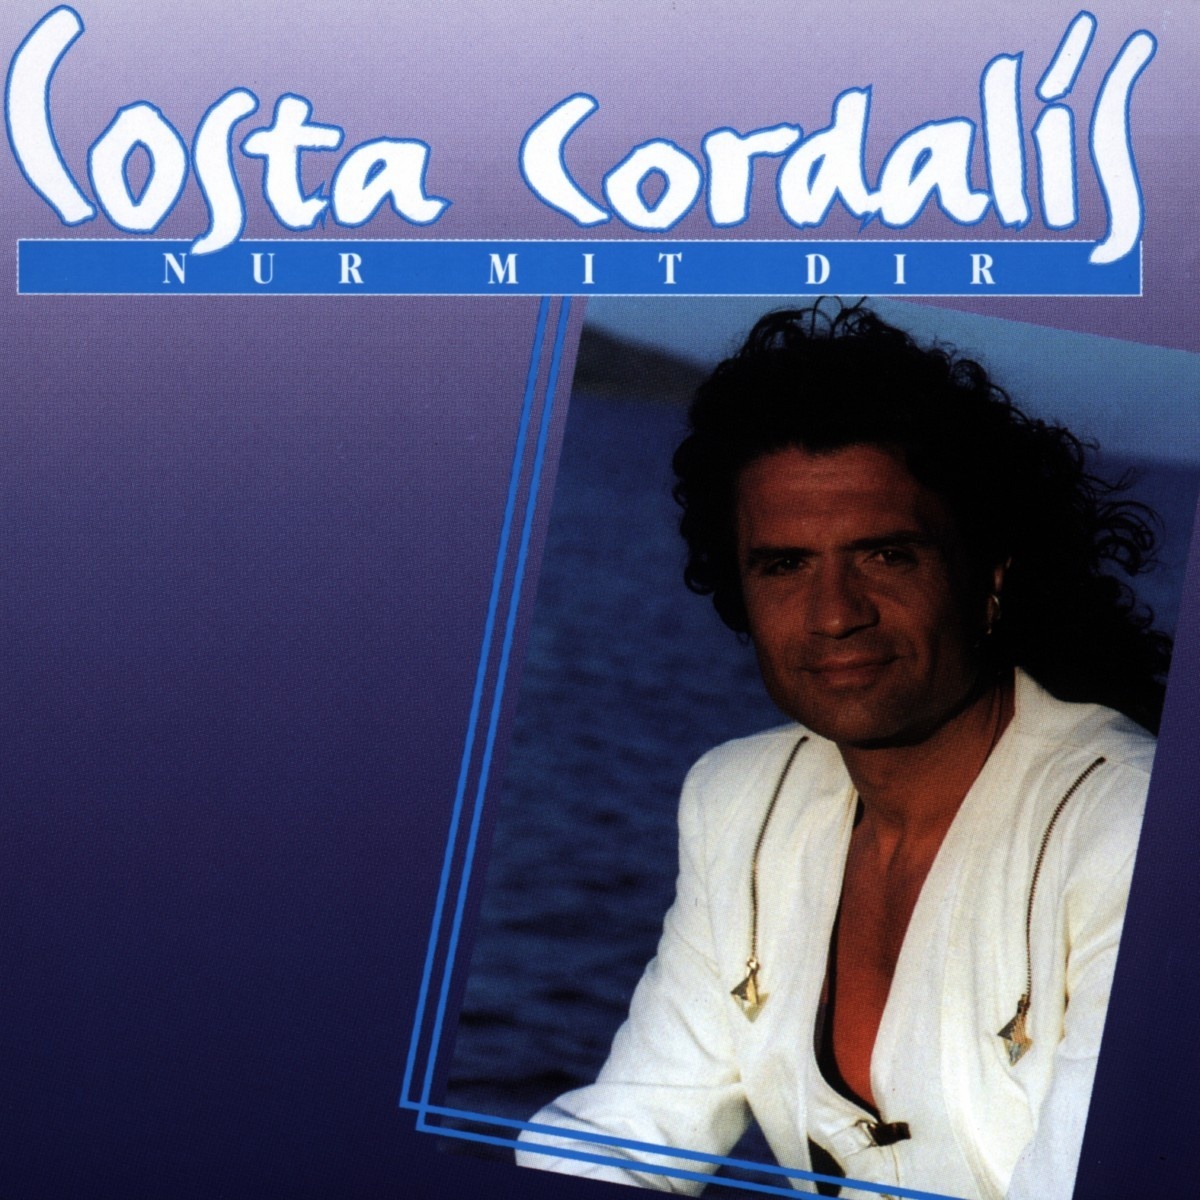 Nur Mit Dir - Costa Cordalis. (CD)